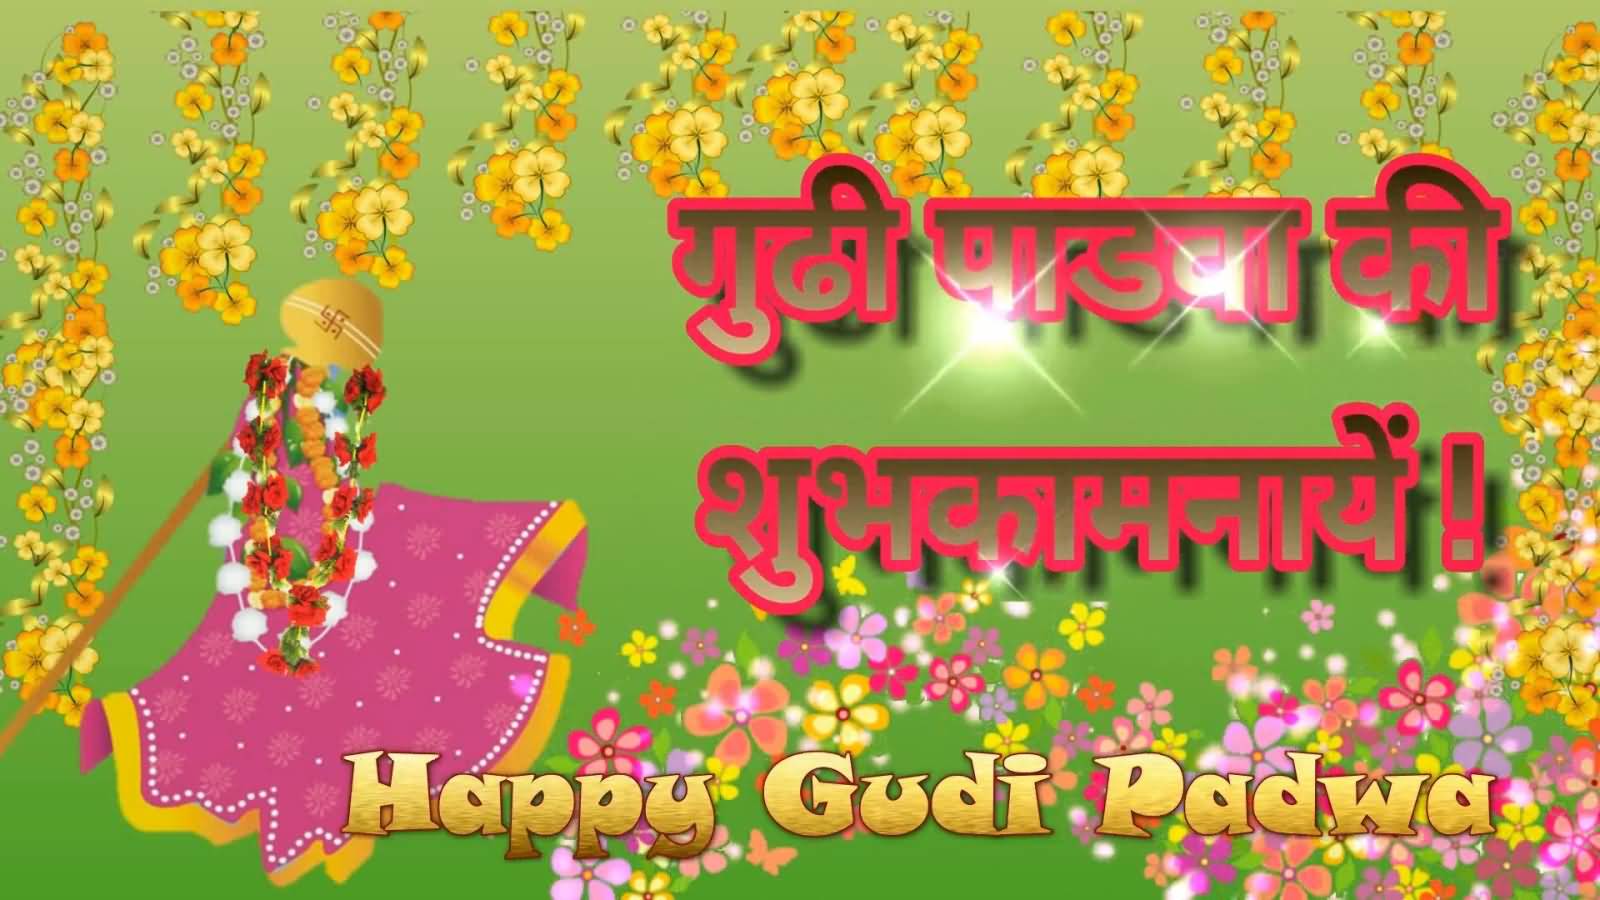 Happy Gudi Padwa 2017 Image